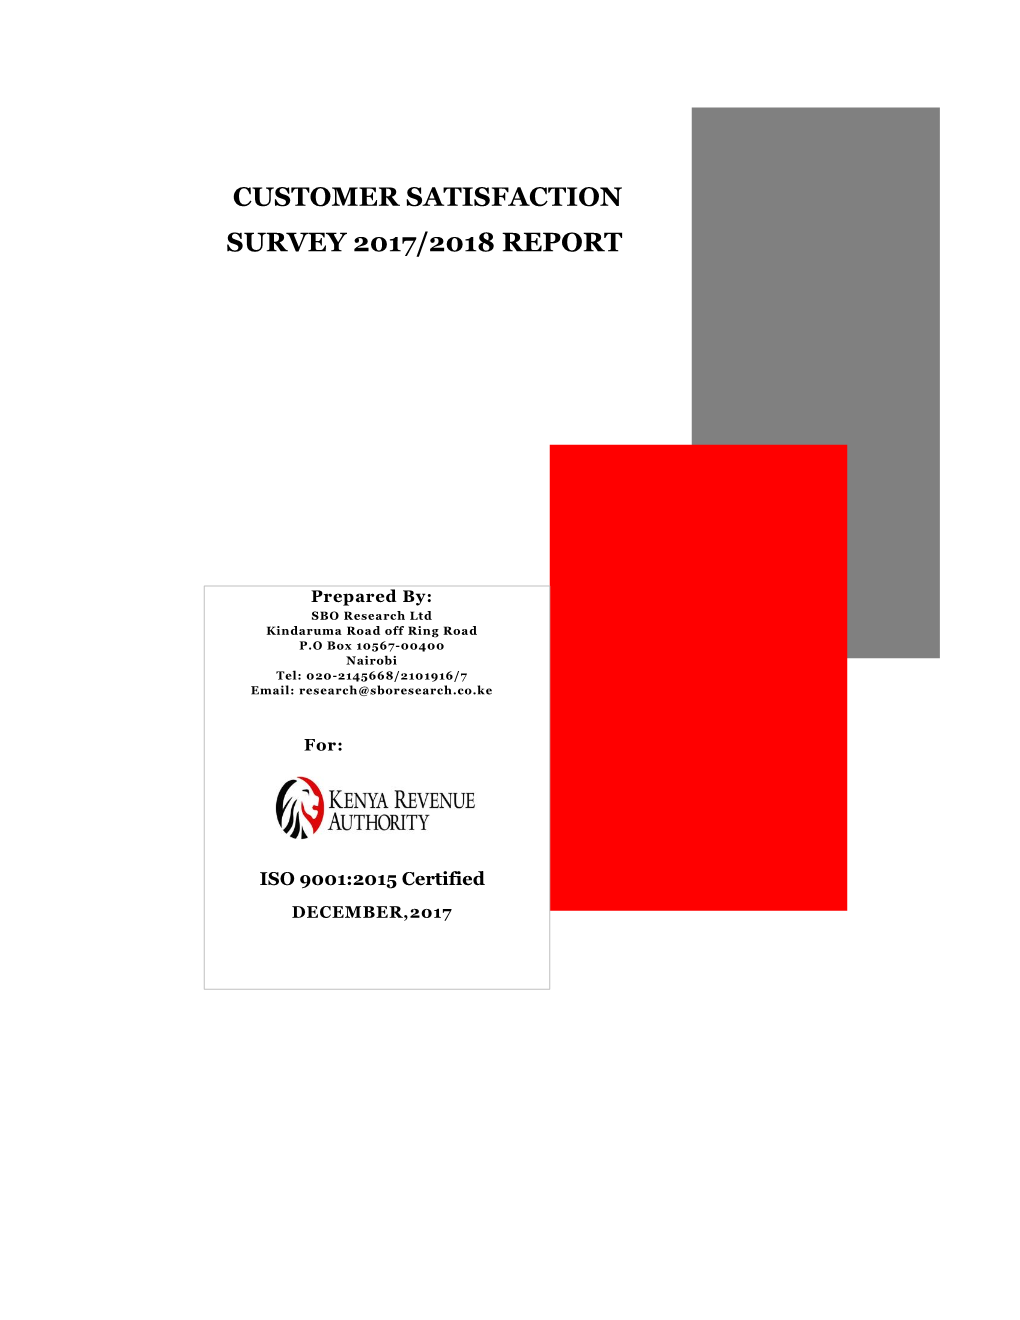 KRA Customer SATISFACTION SURVEY